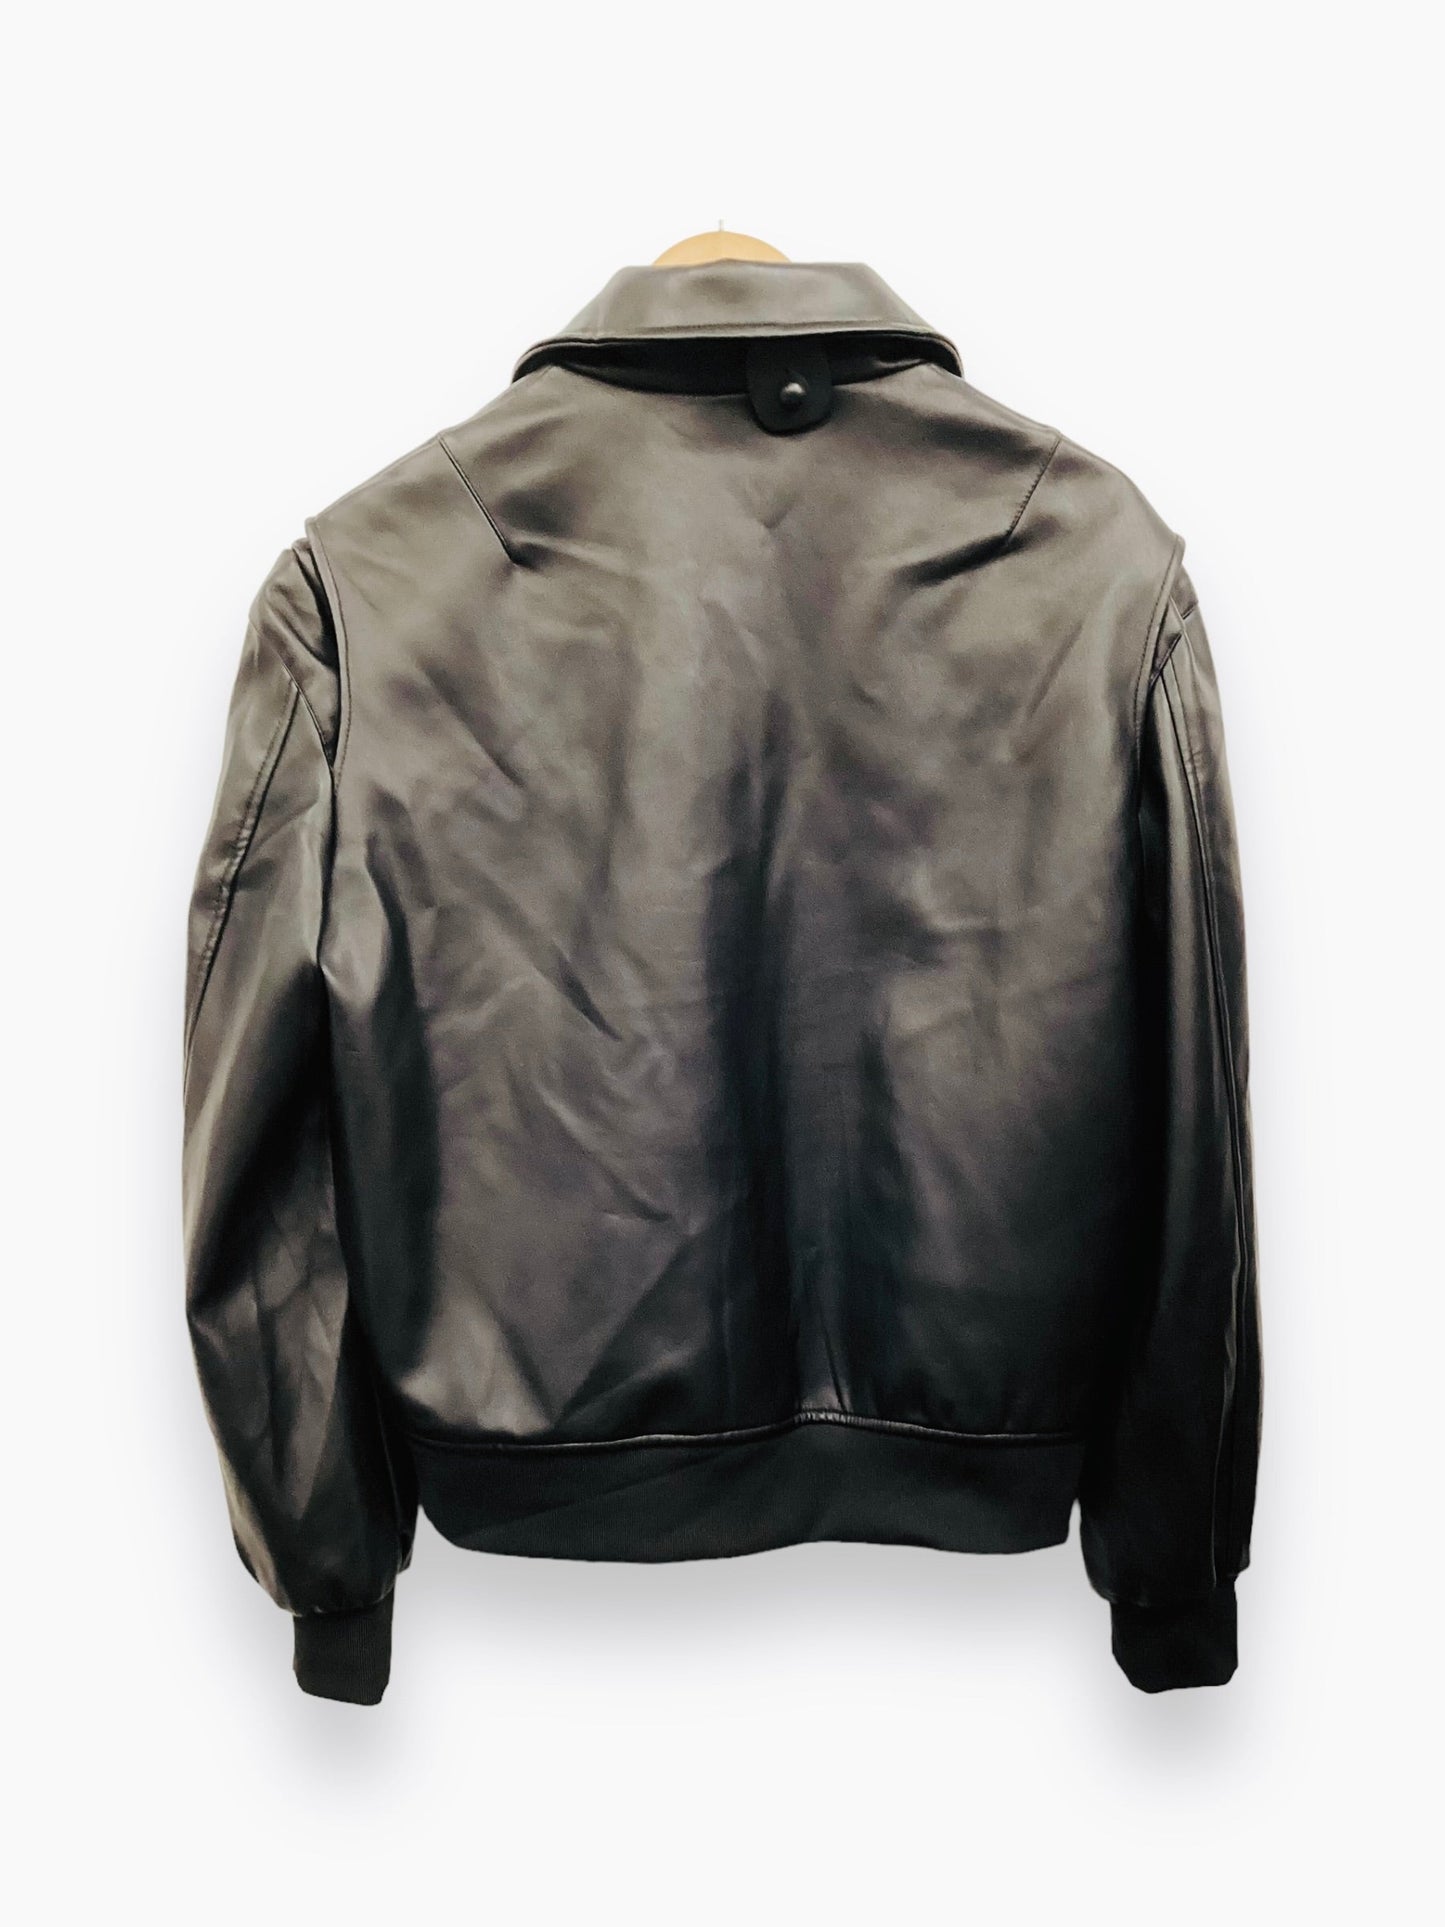 Black Jacket Leather Clothes Irony Porno Size M